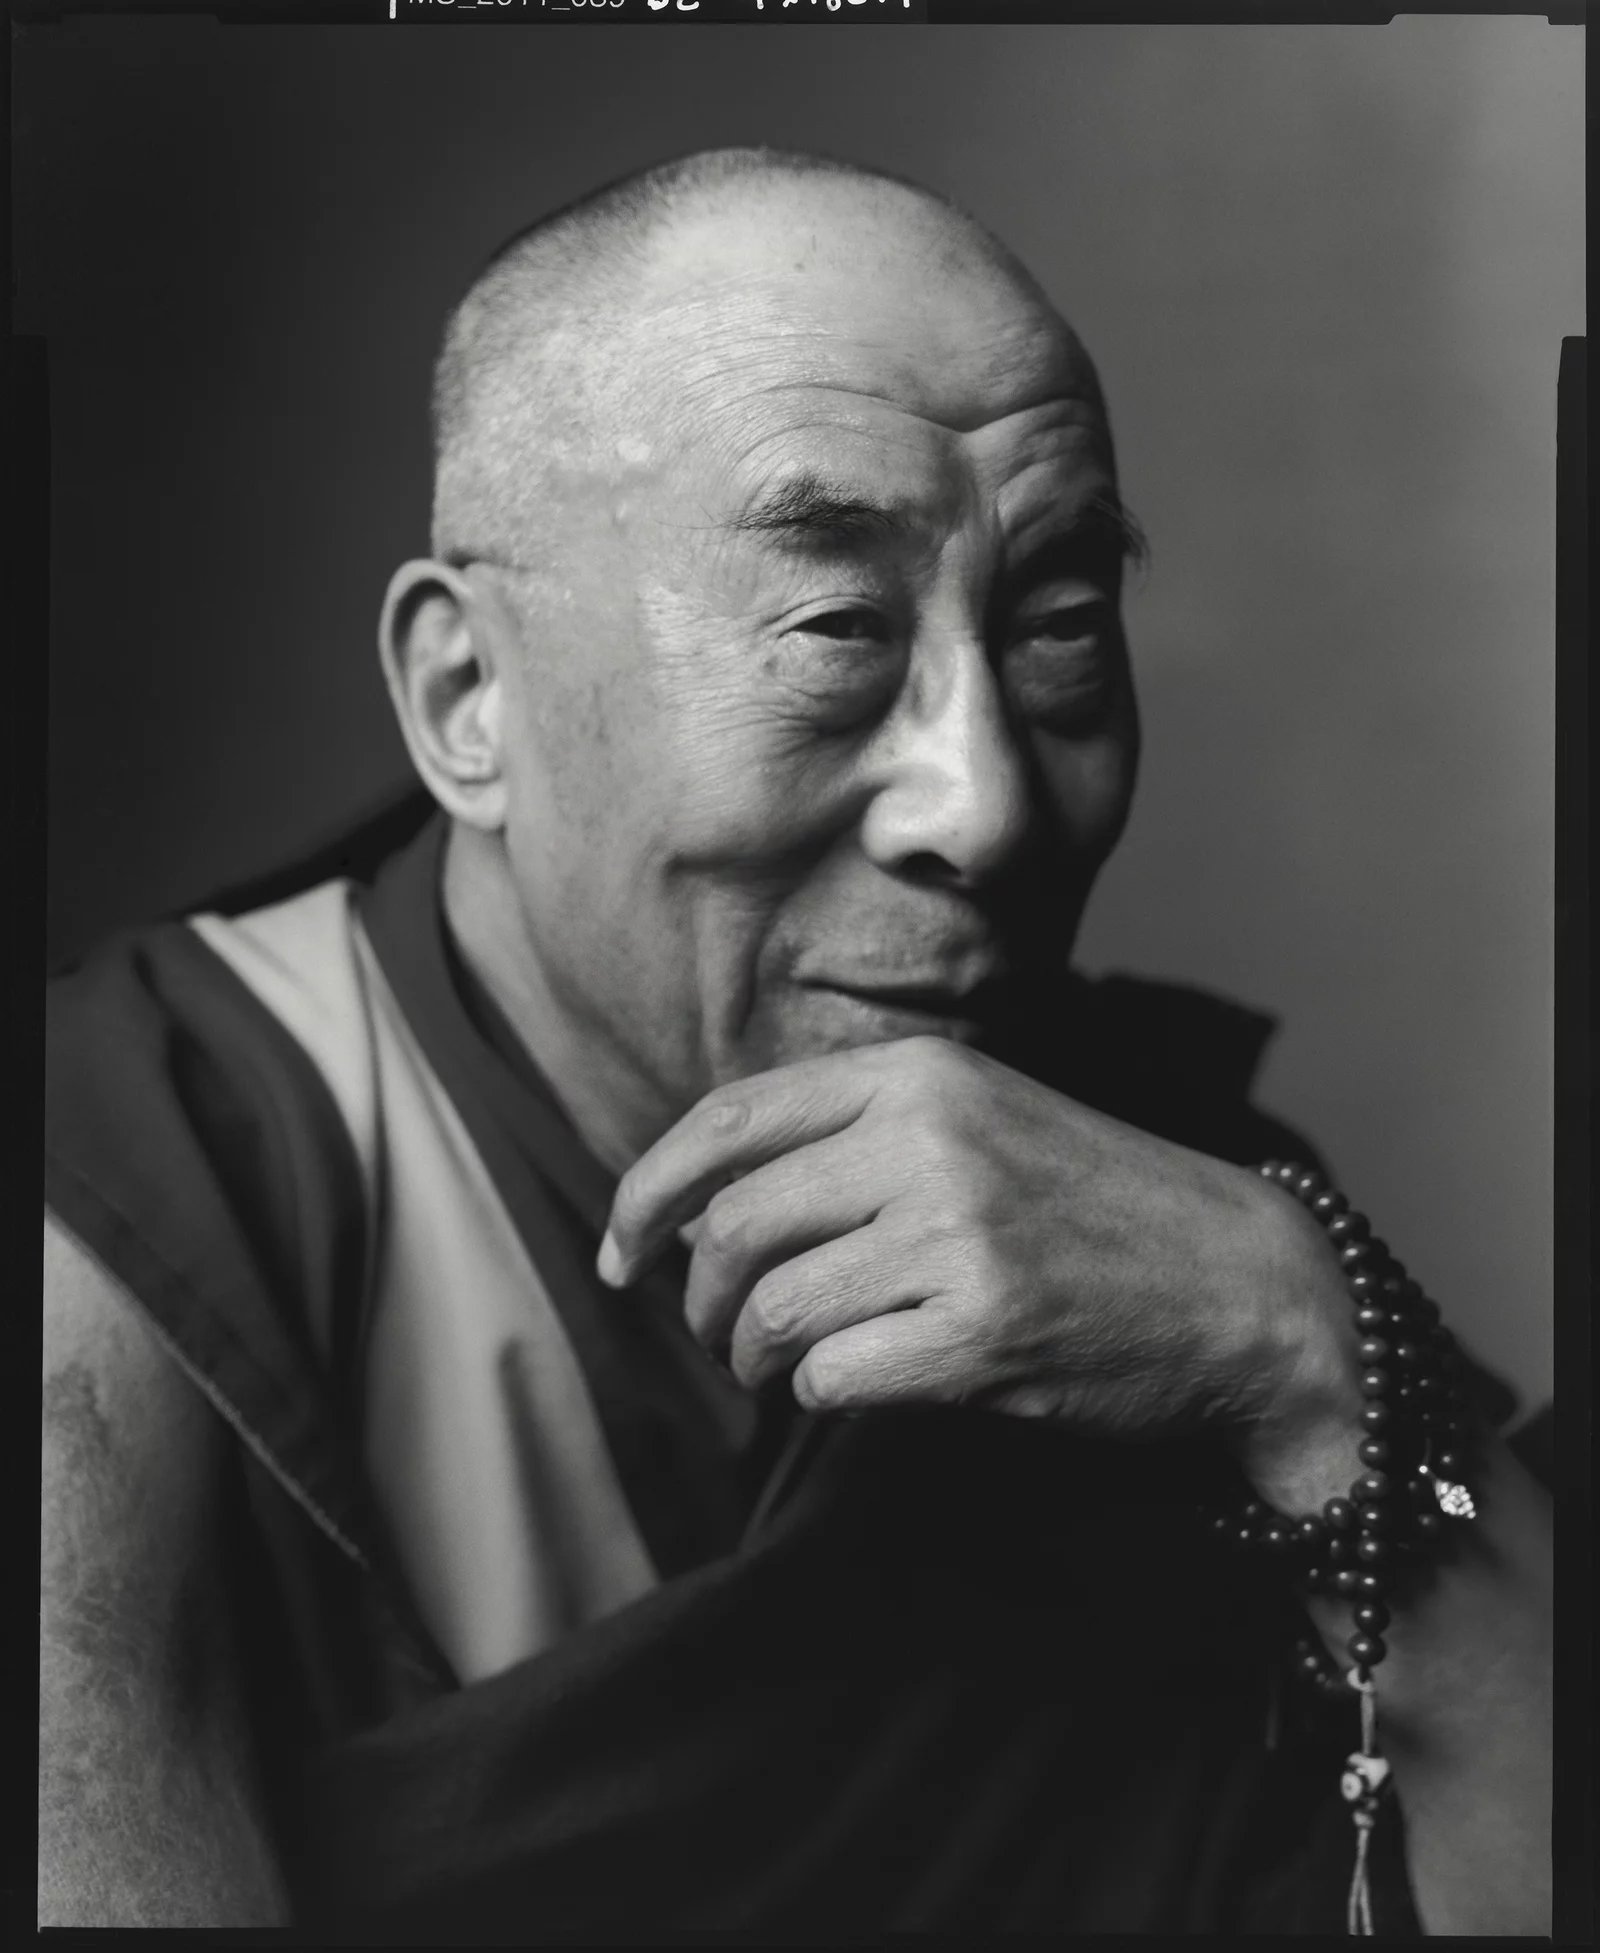  The Dalai Lama 